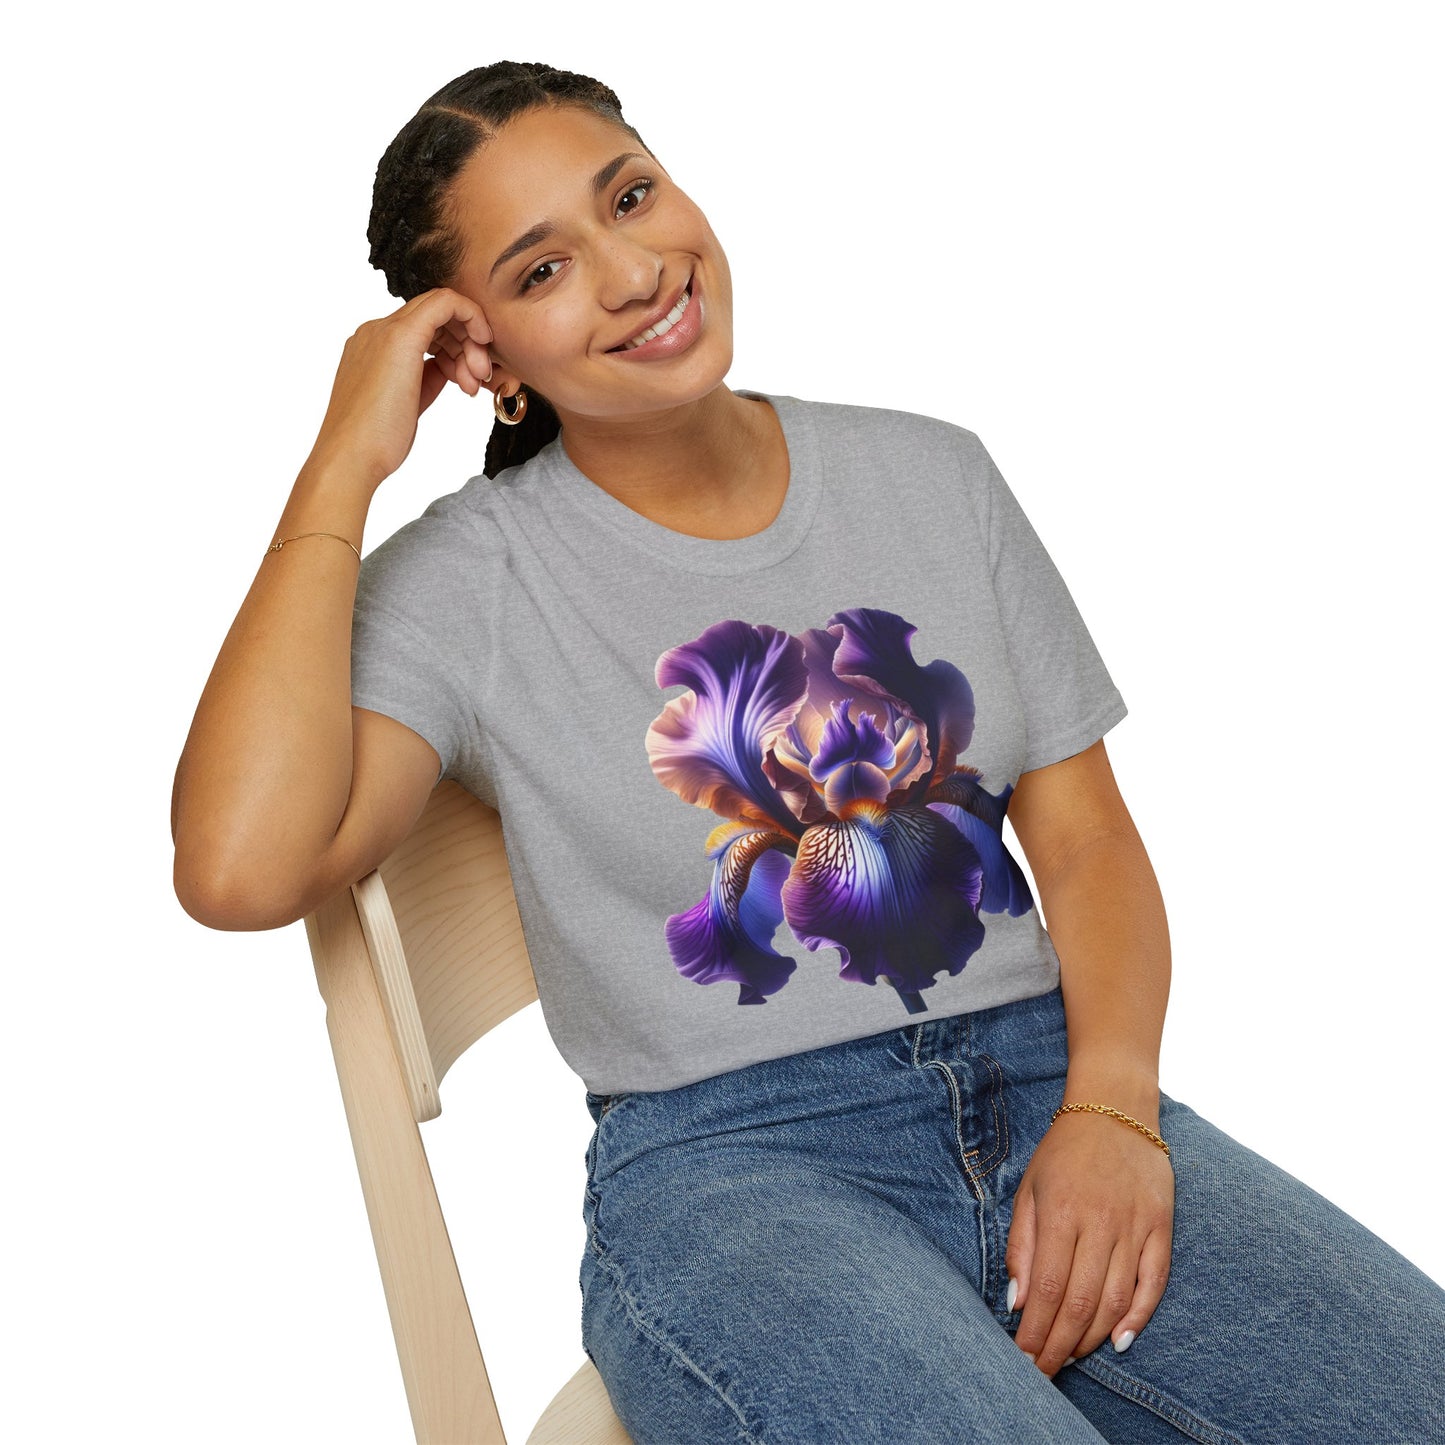 Hazte notar con nuestra exclusiva camiseta con diseño de flores de iris